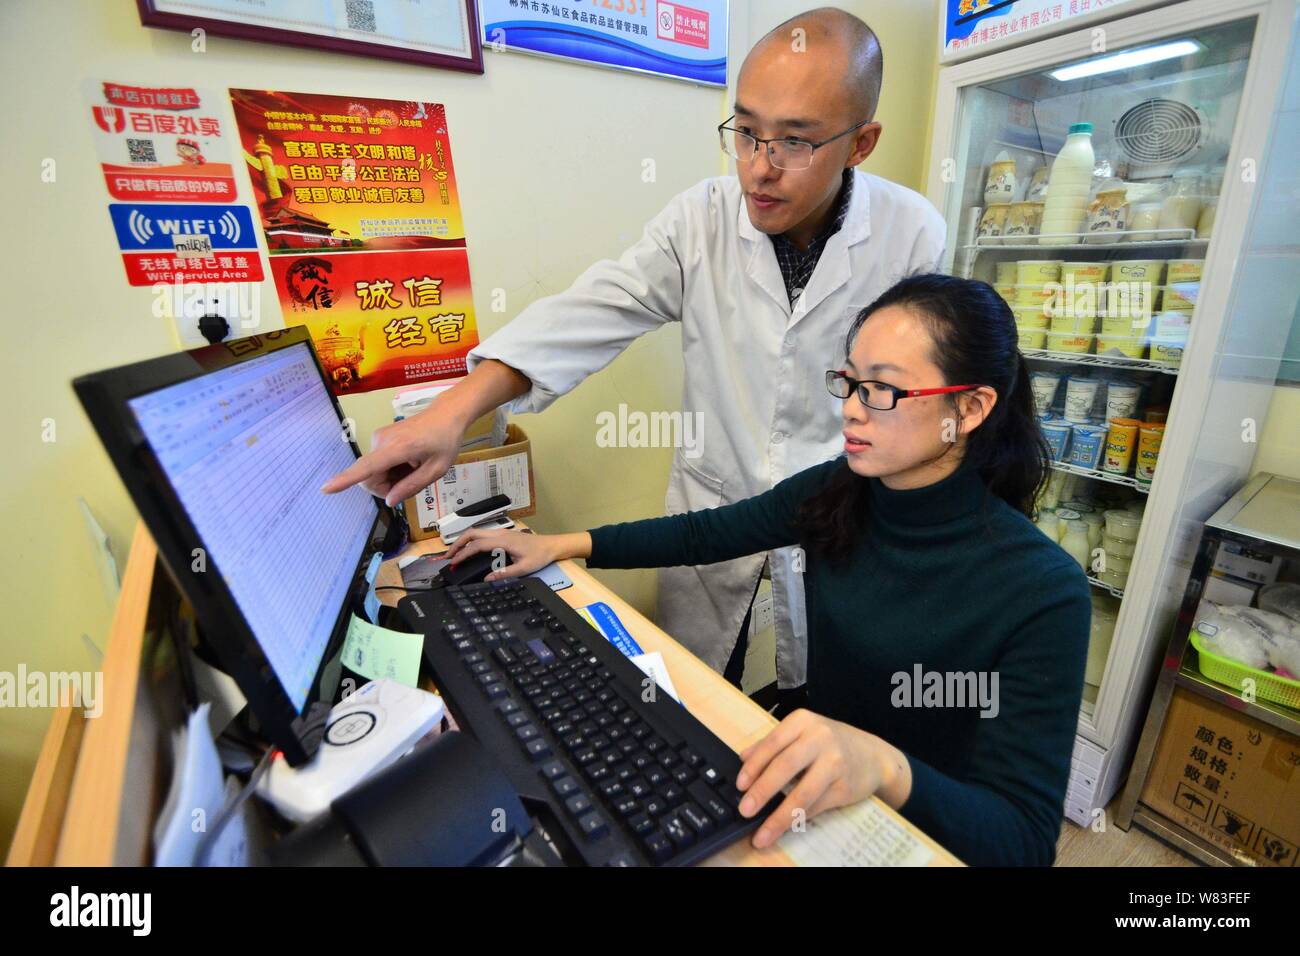 Éleveur de chinois Zeng Bo, titulaire d'un doctorat en nutrition animale de l'Académie Chinoise des Sciences, et son épouse Huang Nana traitent de l'ordre des clients Banque D'Images